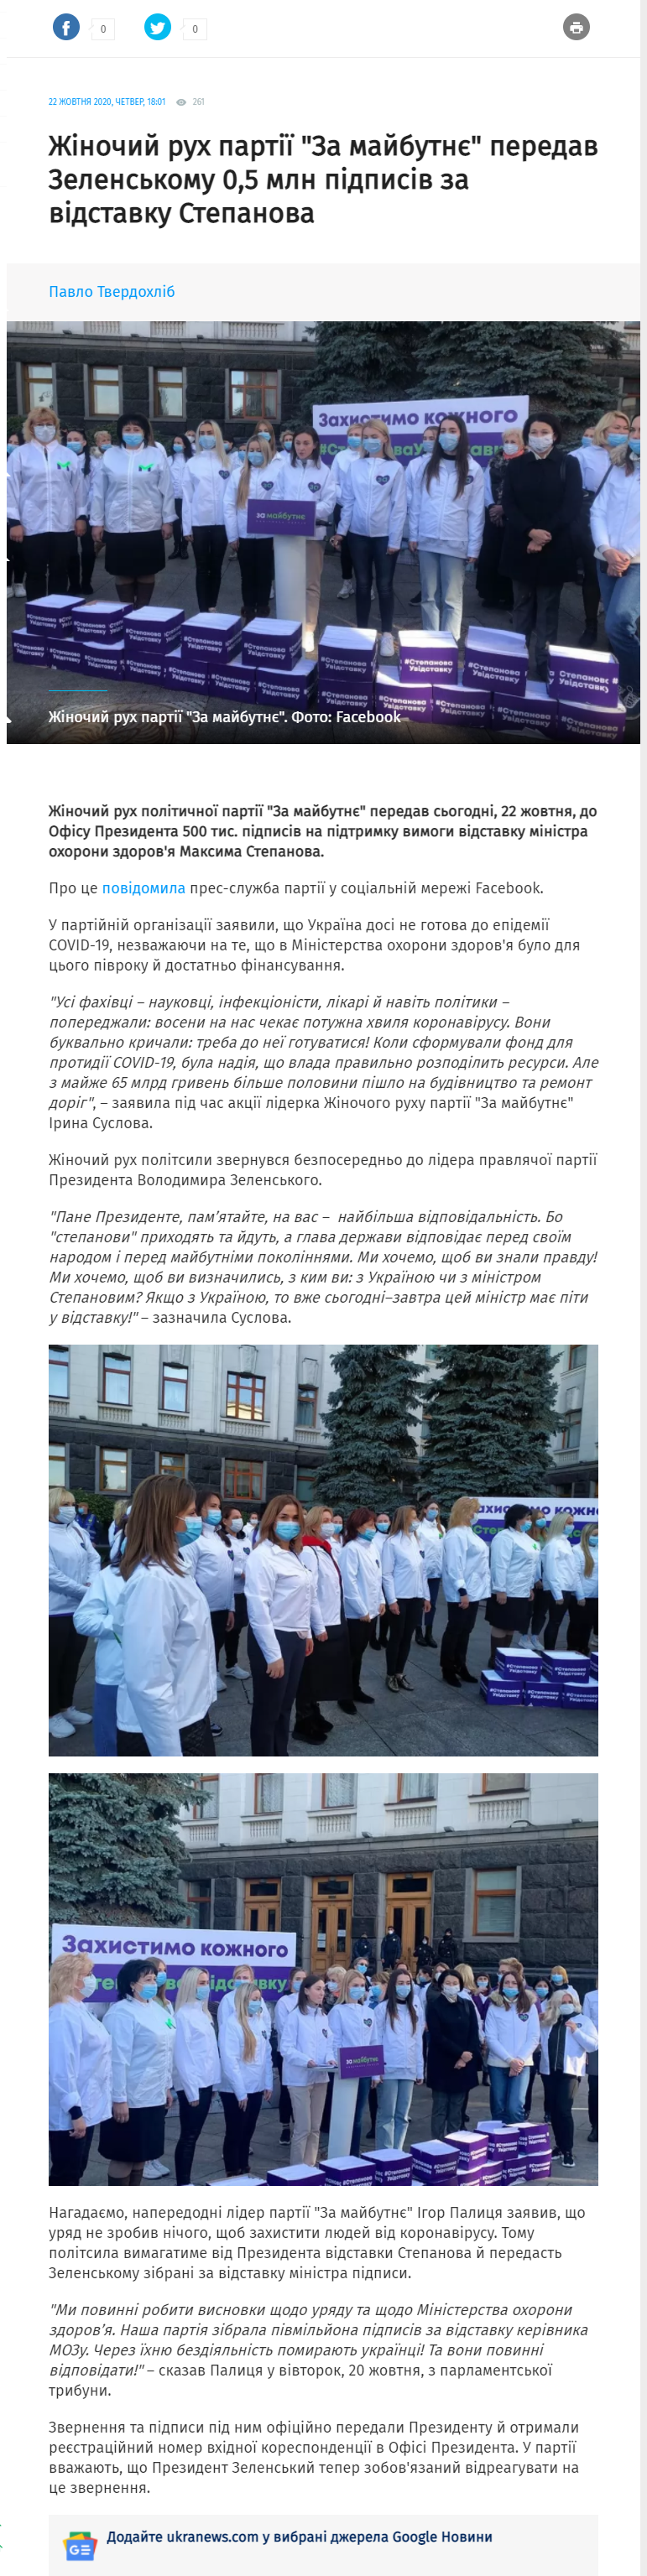 https://ukranews.com/ua/news/733911-do-ofisu-prezydenta-peredano-pivmiljona-pidpysiv-za-vidstavku-stepanova-za-majbutnye